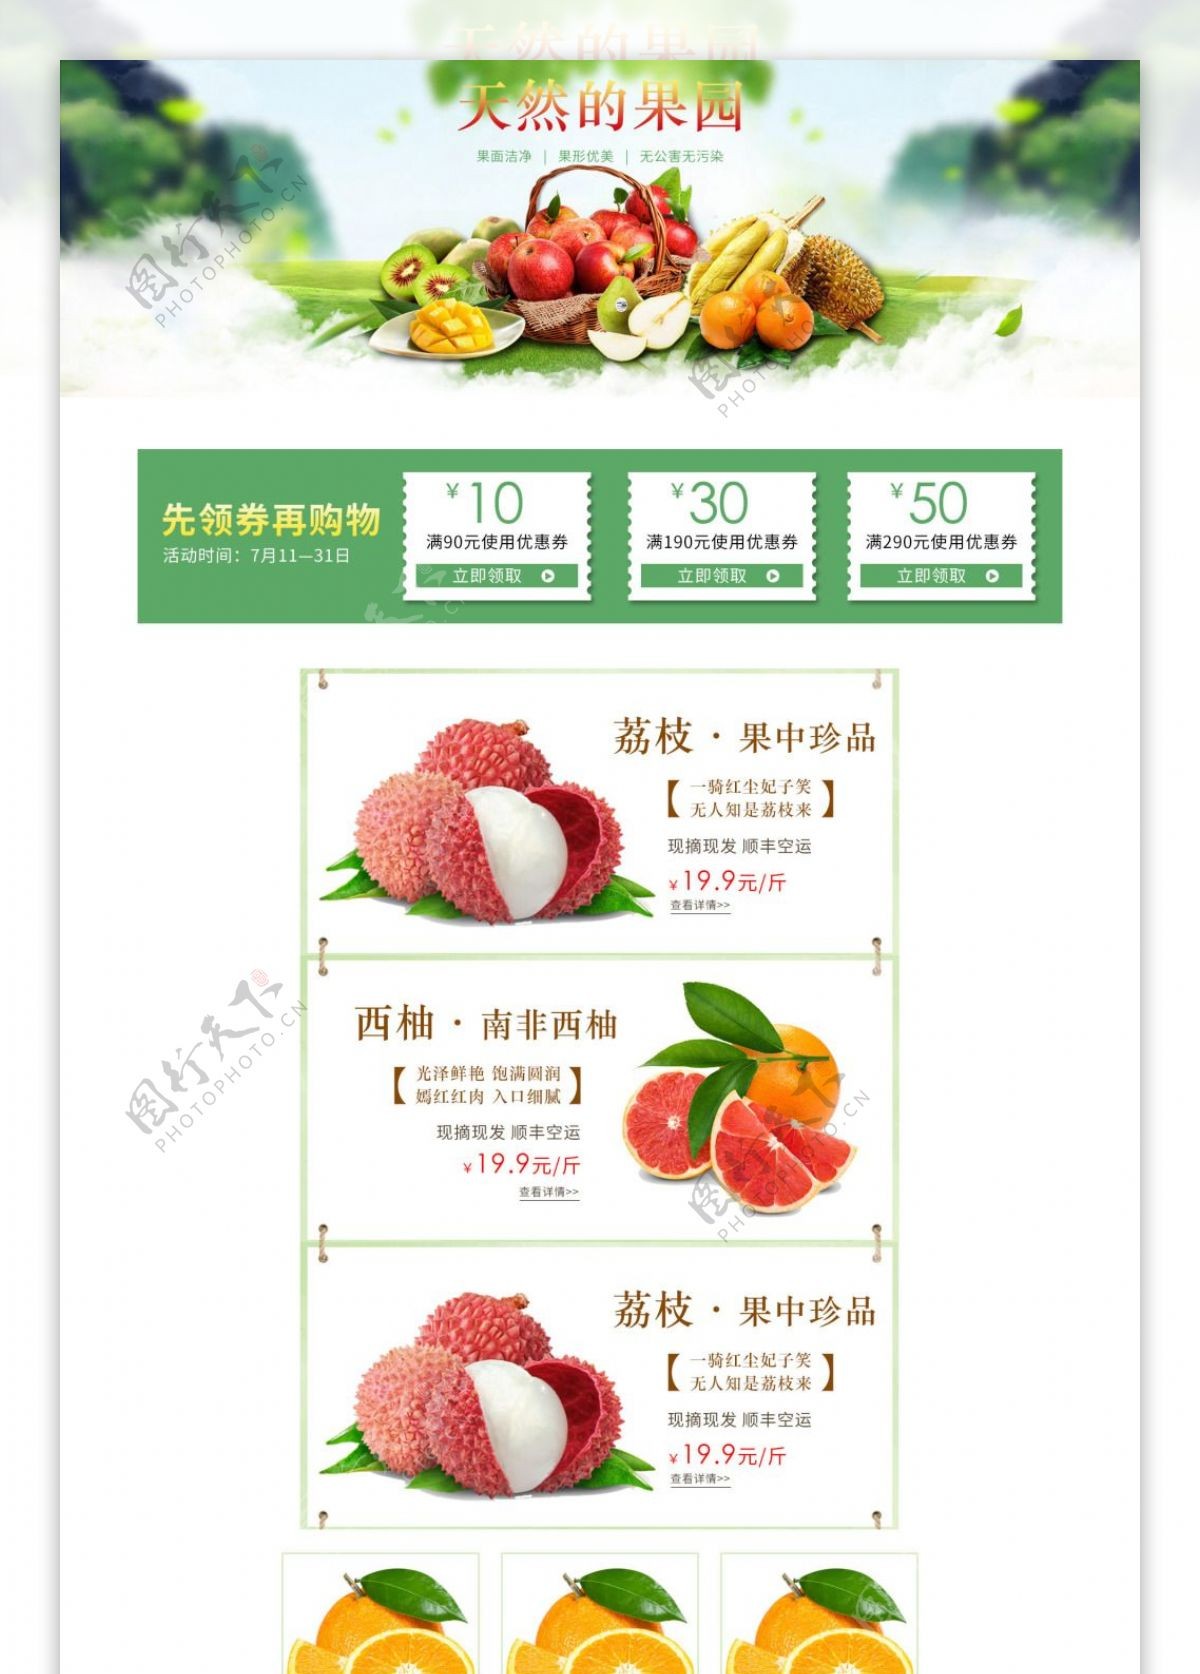 淘宝天猫京东电商夏季水果美食绿色食品首页